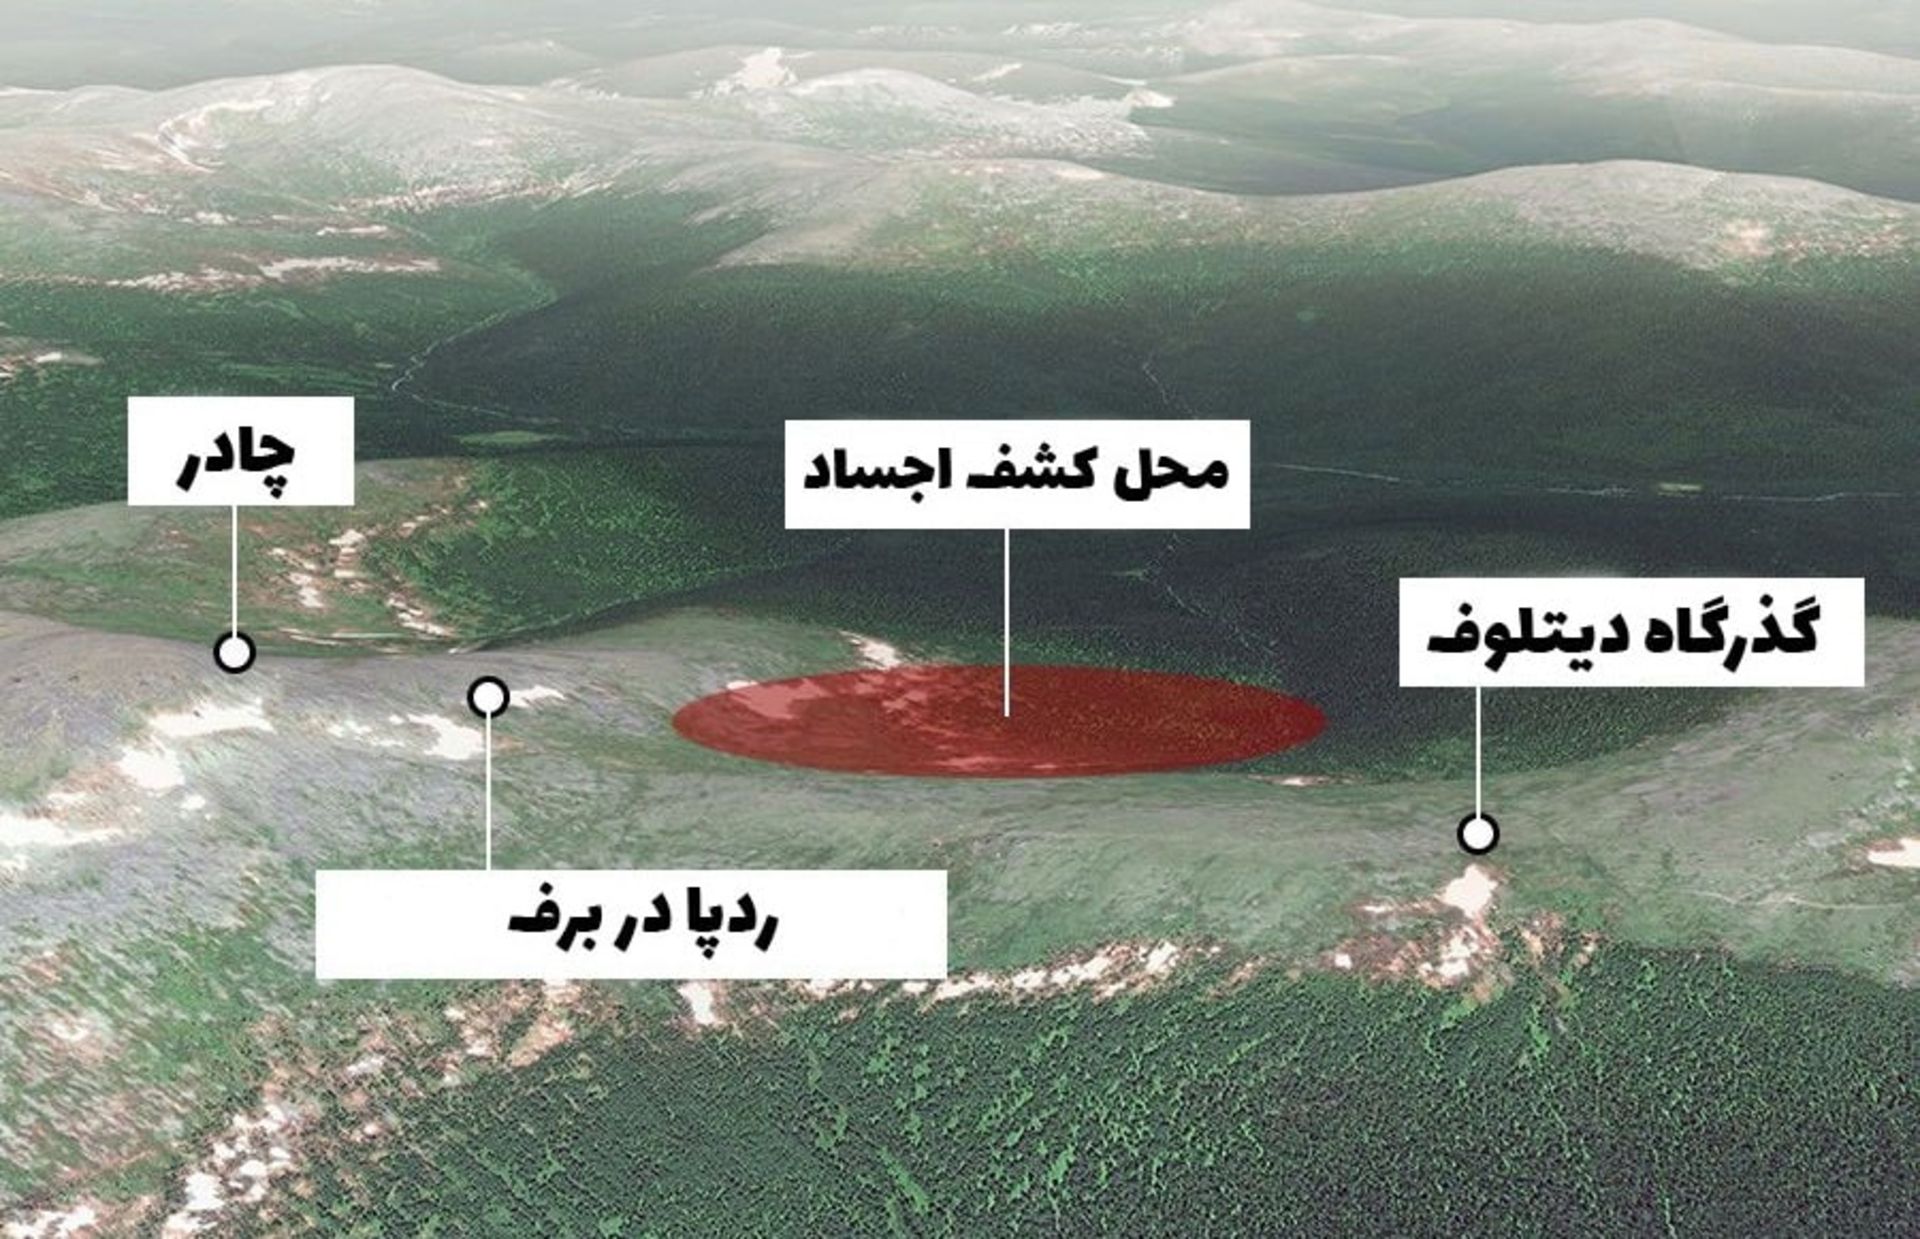 مرجع متخصصين ايران حادثه گذرگاه ديتلوف: نقشه